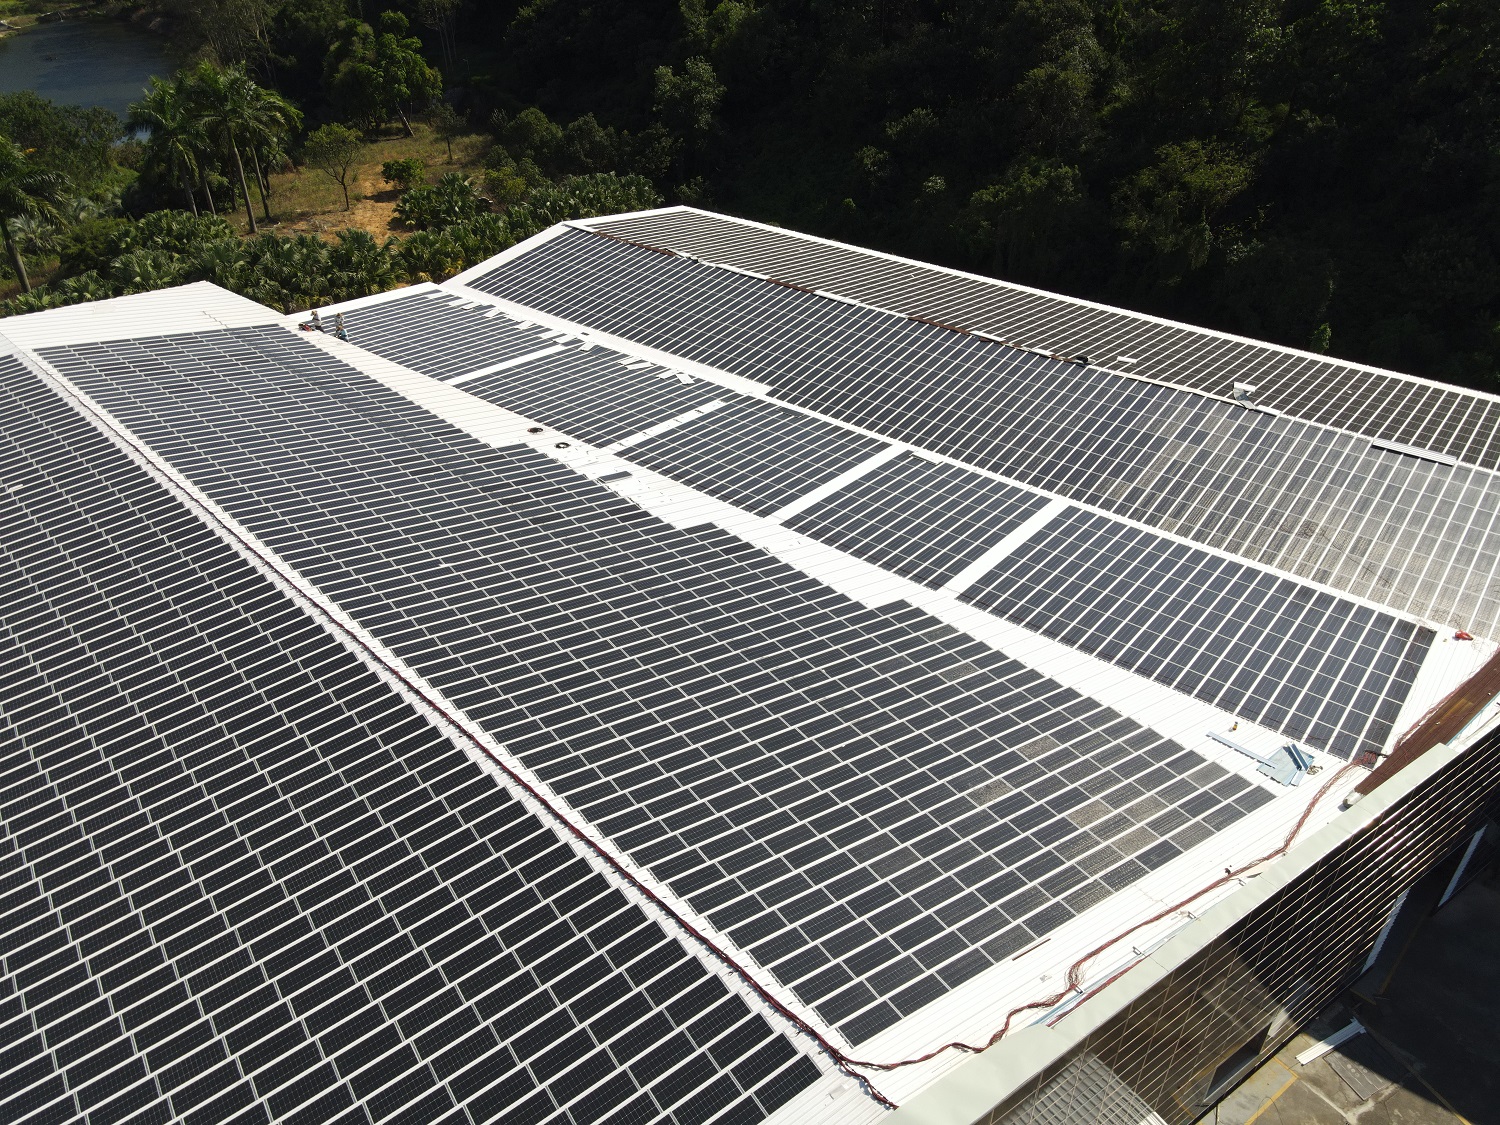 屋面装太阳能板国家补贴钱吗?国外屋顶太阳能发电有补助吗?